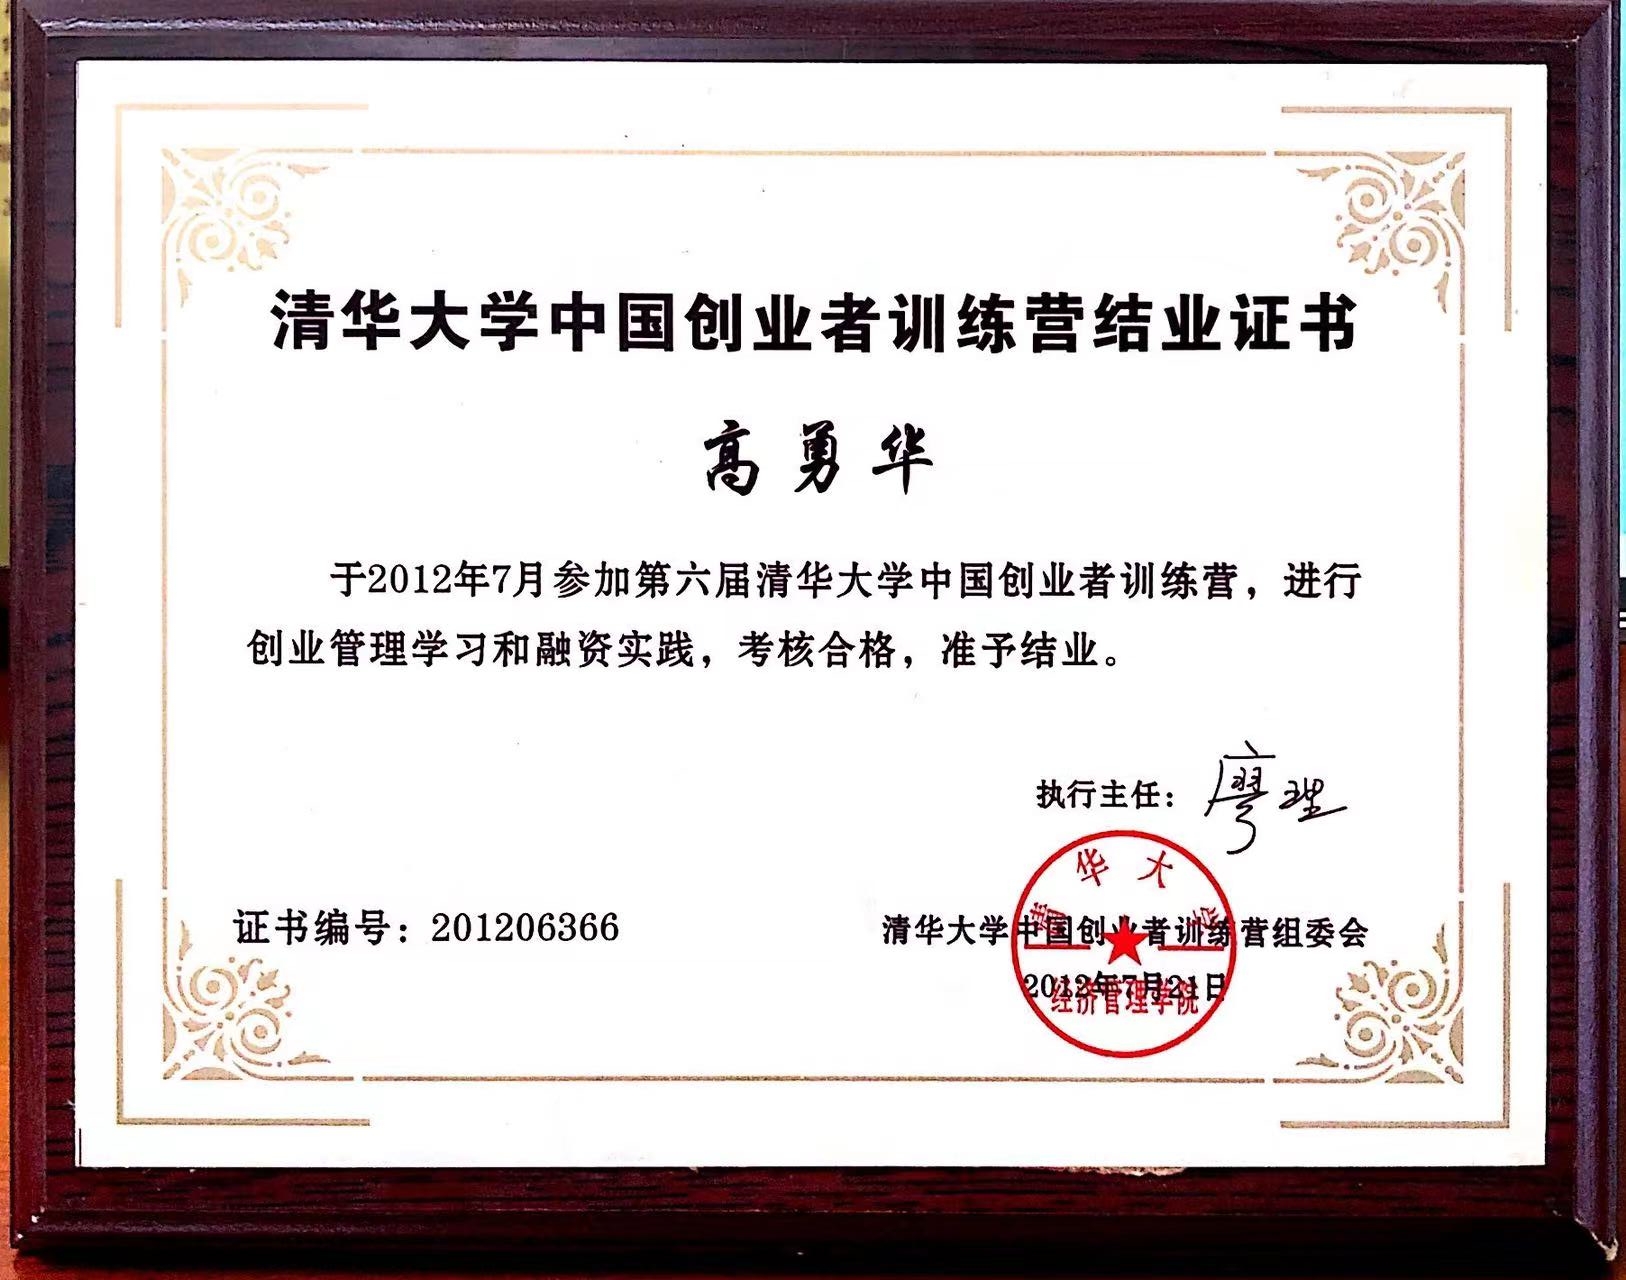 清华大学创业者 结业证书